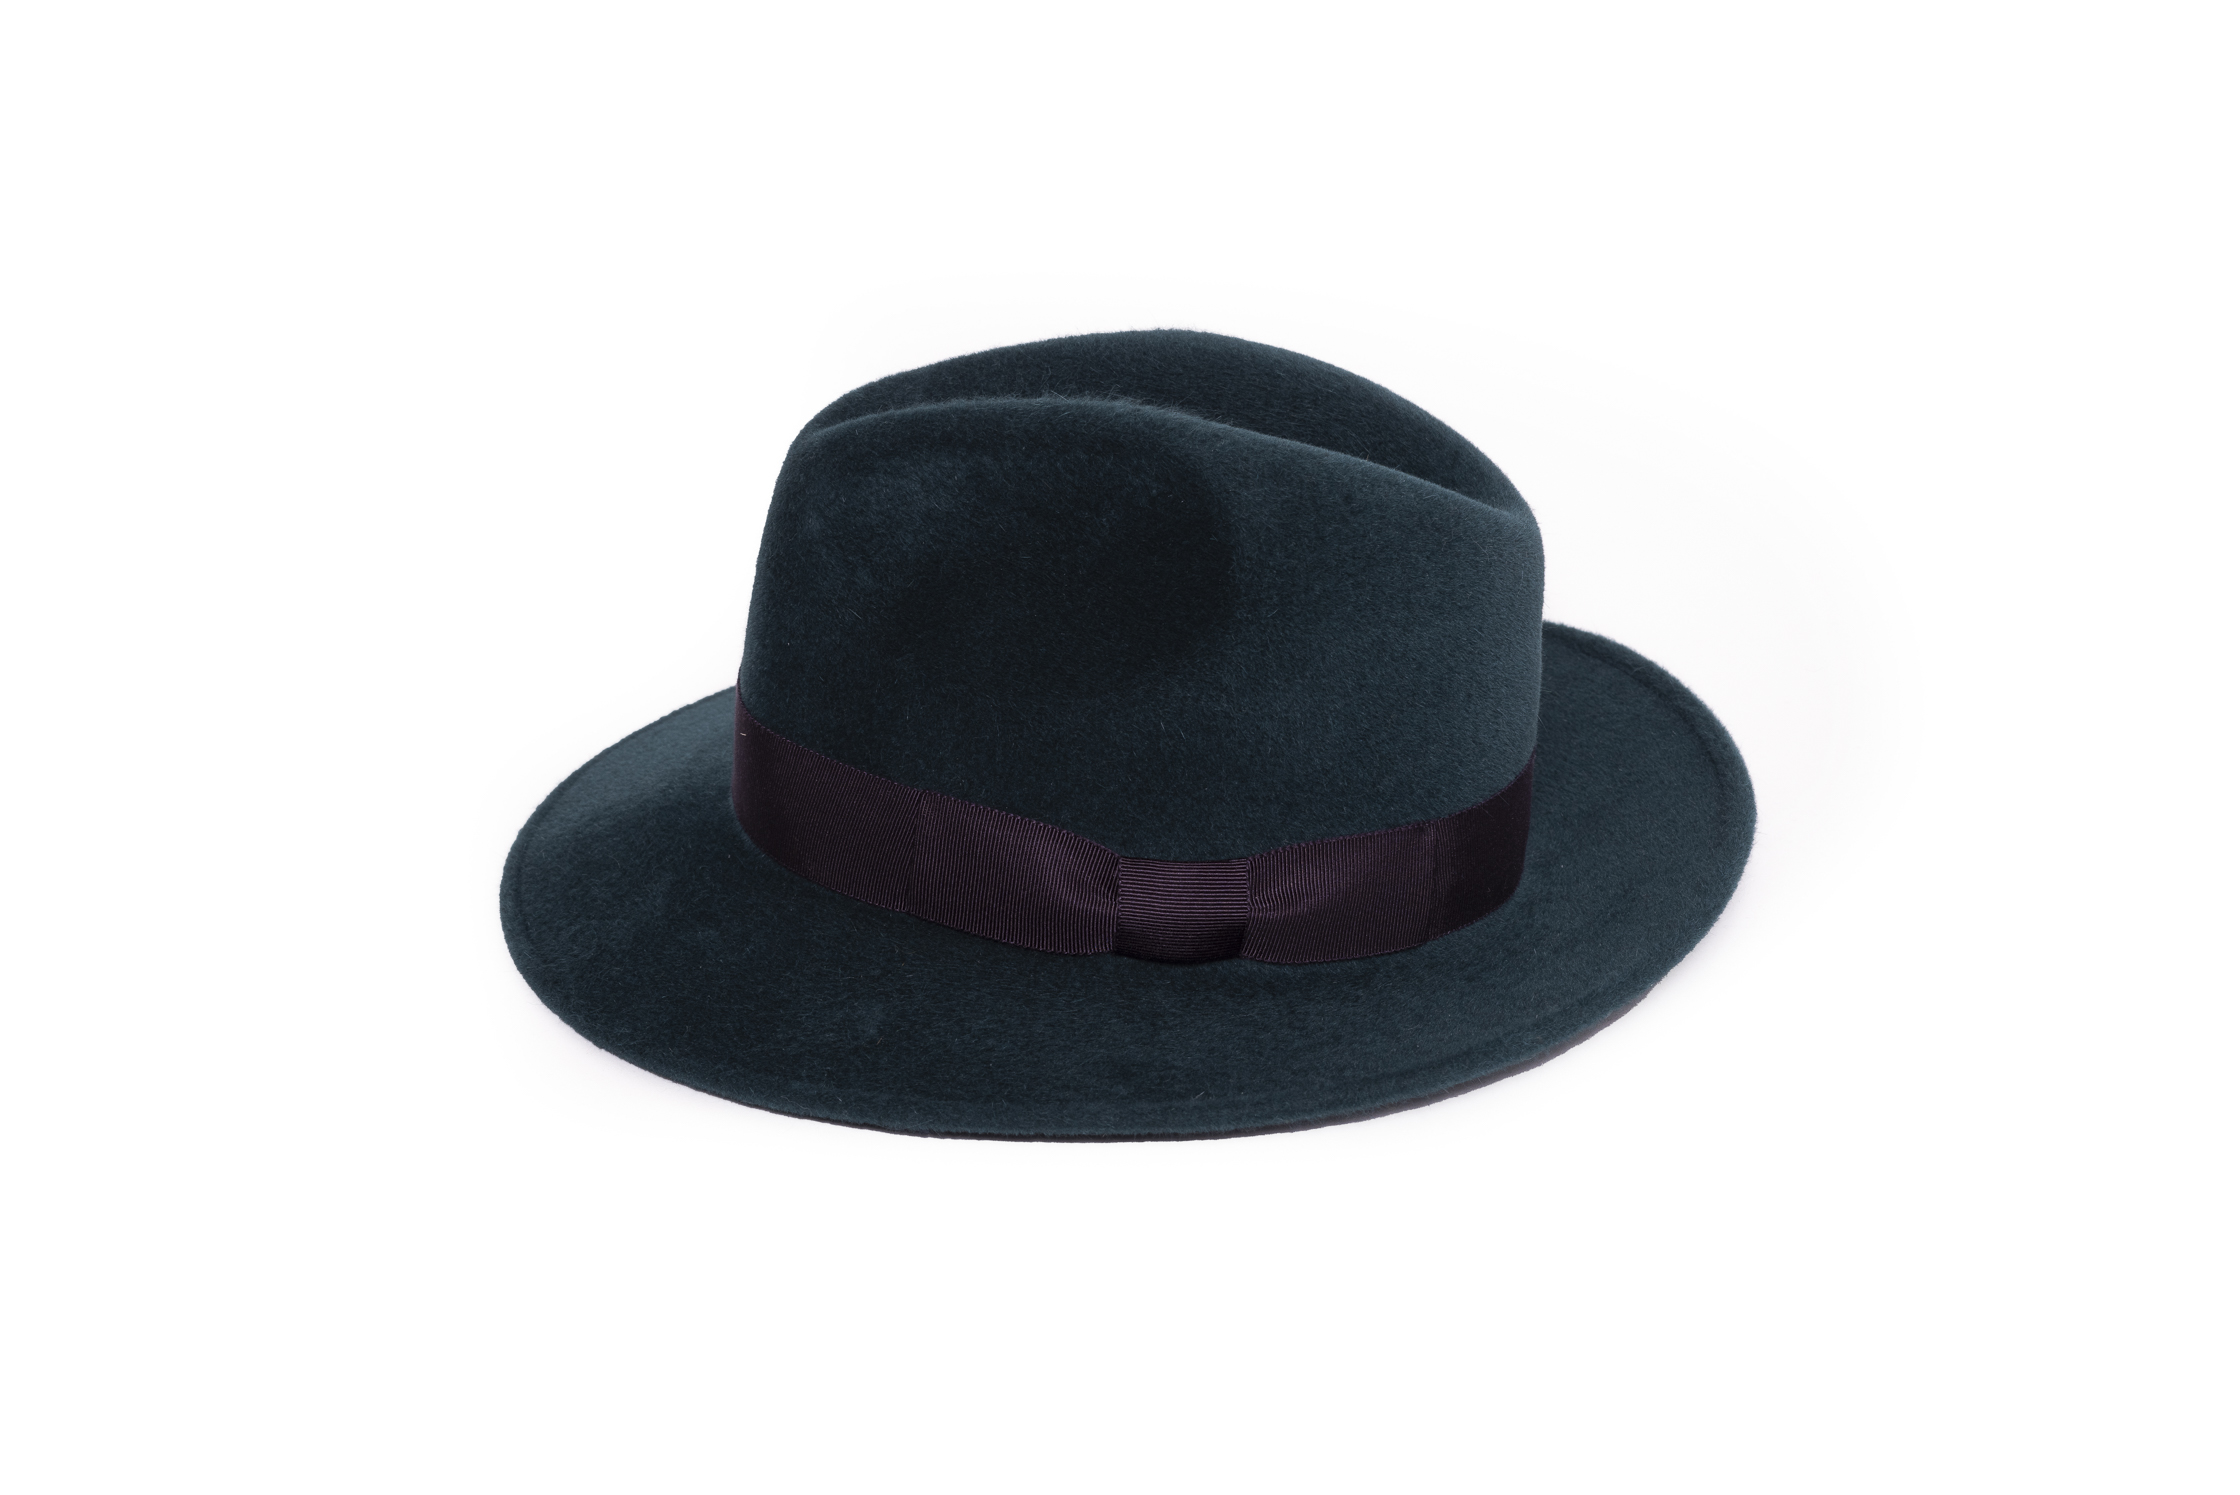 Froid… casquettes, bonnets ou chapeaux: le style compte ! – Blakemag